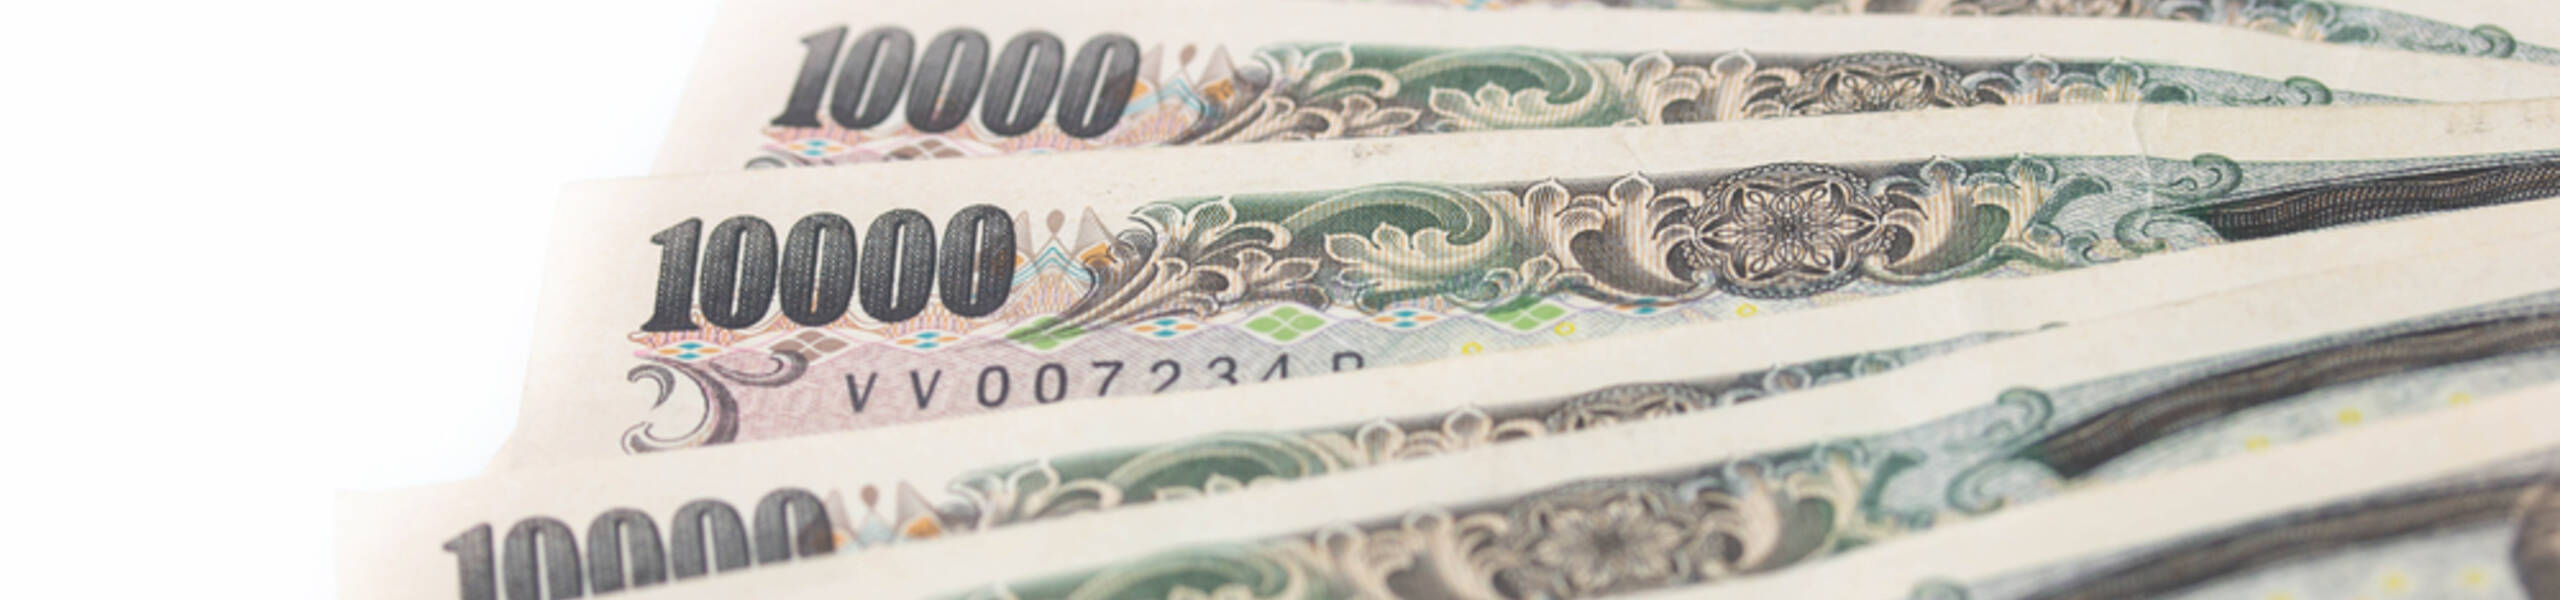 USD / JPY: Otimismo do mercado pesa sobre a moeda japonesa